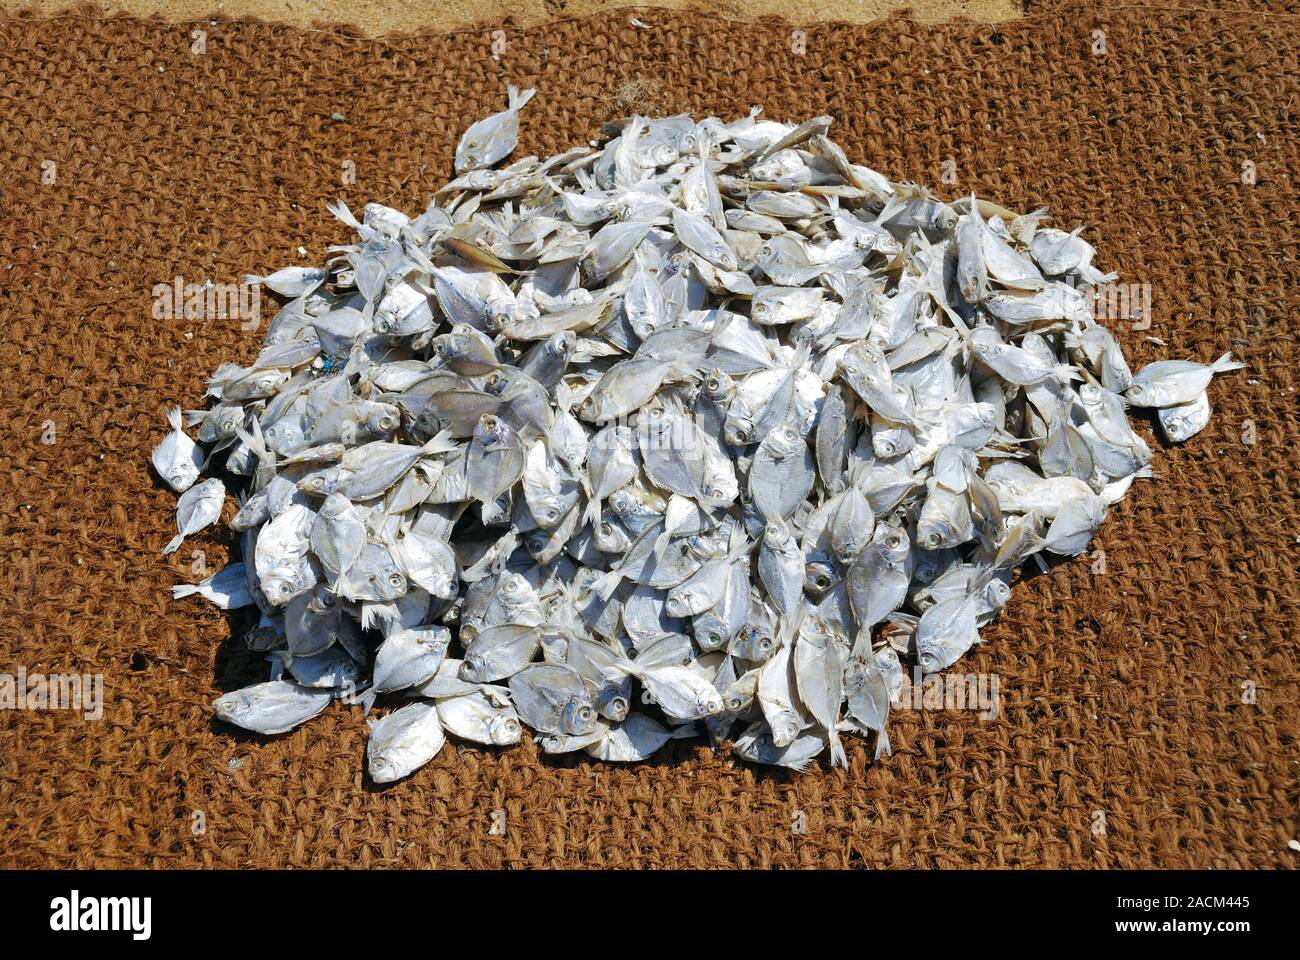 Getrocknete Fische, Fische sind auf Kokos Matten am Strand, Negombo, Sri Lanka, Südafrika Asien, Asien getrocknet Stockfoto